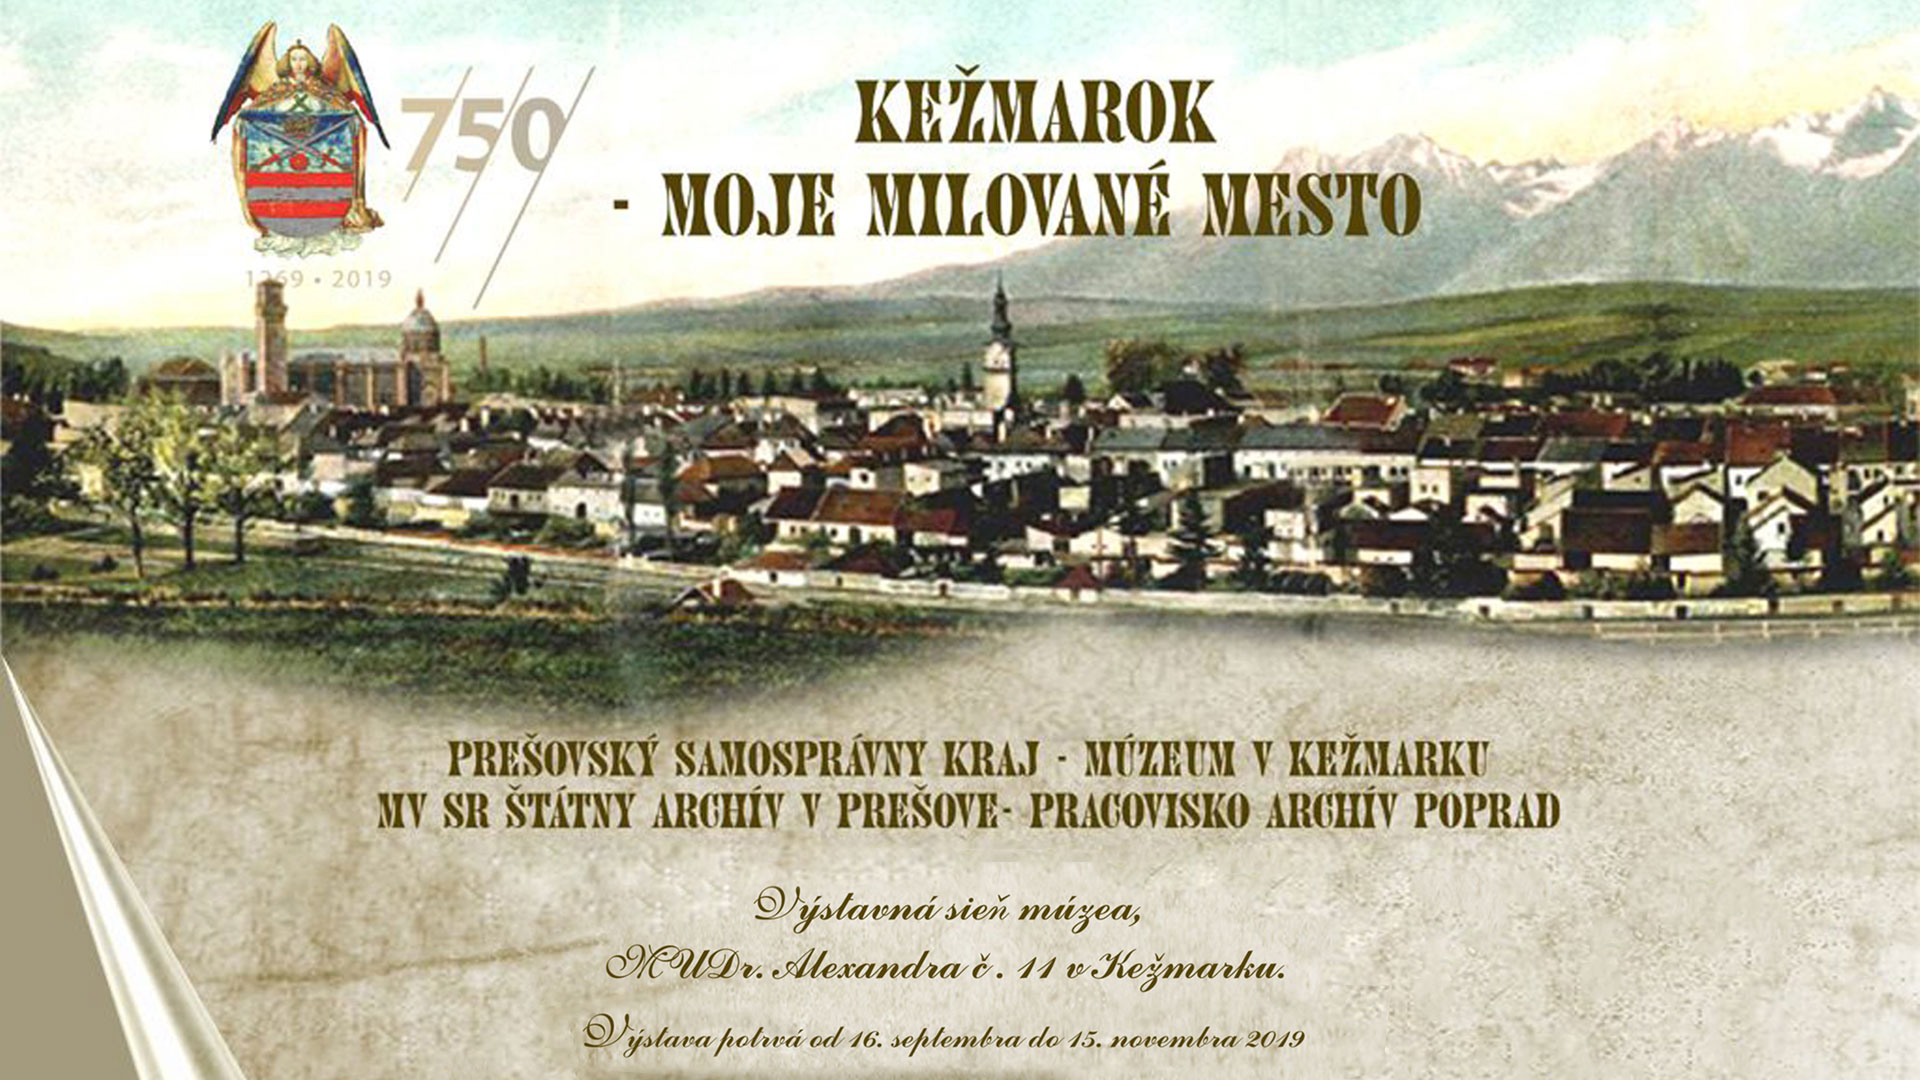 Výstava Kežmarok - moje milované mesto - banner.